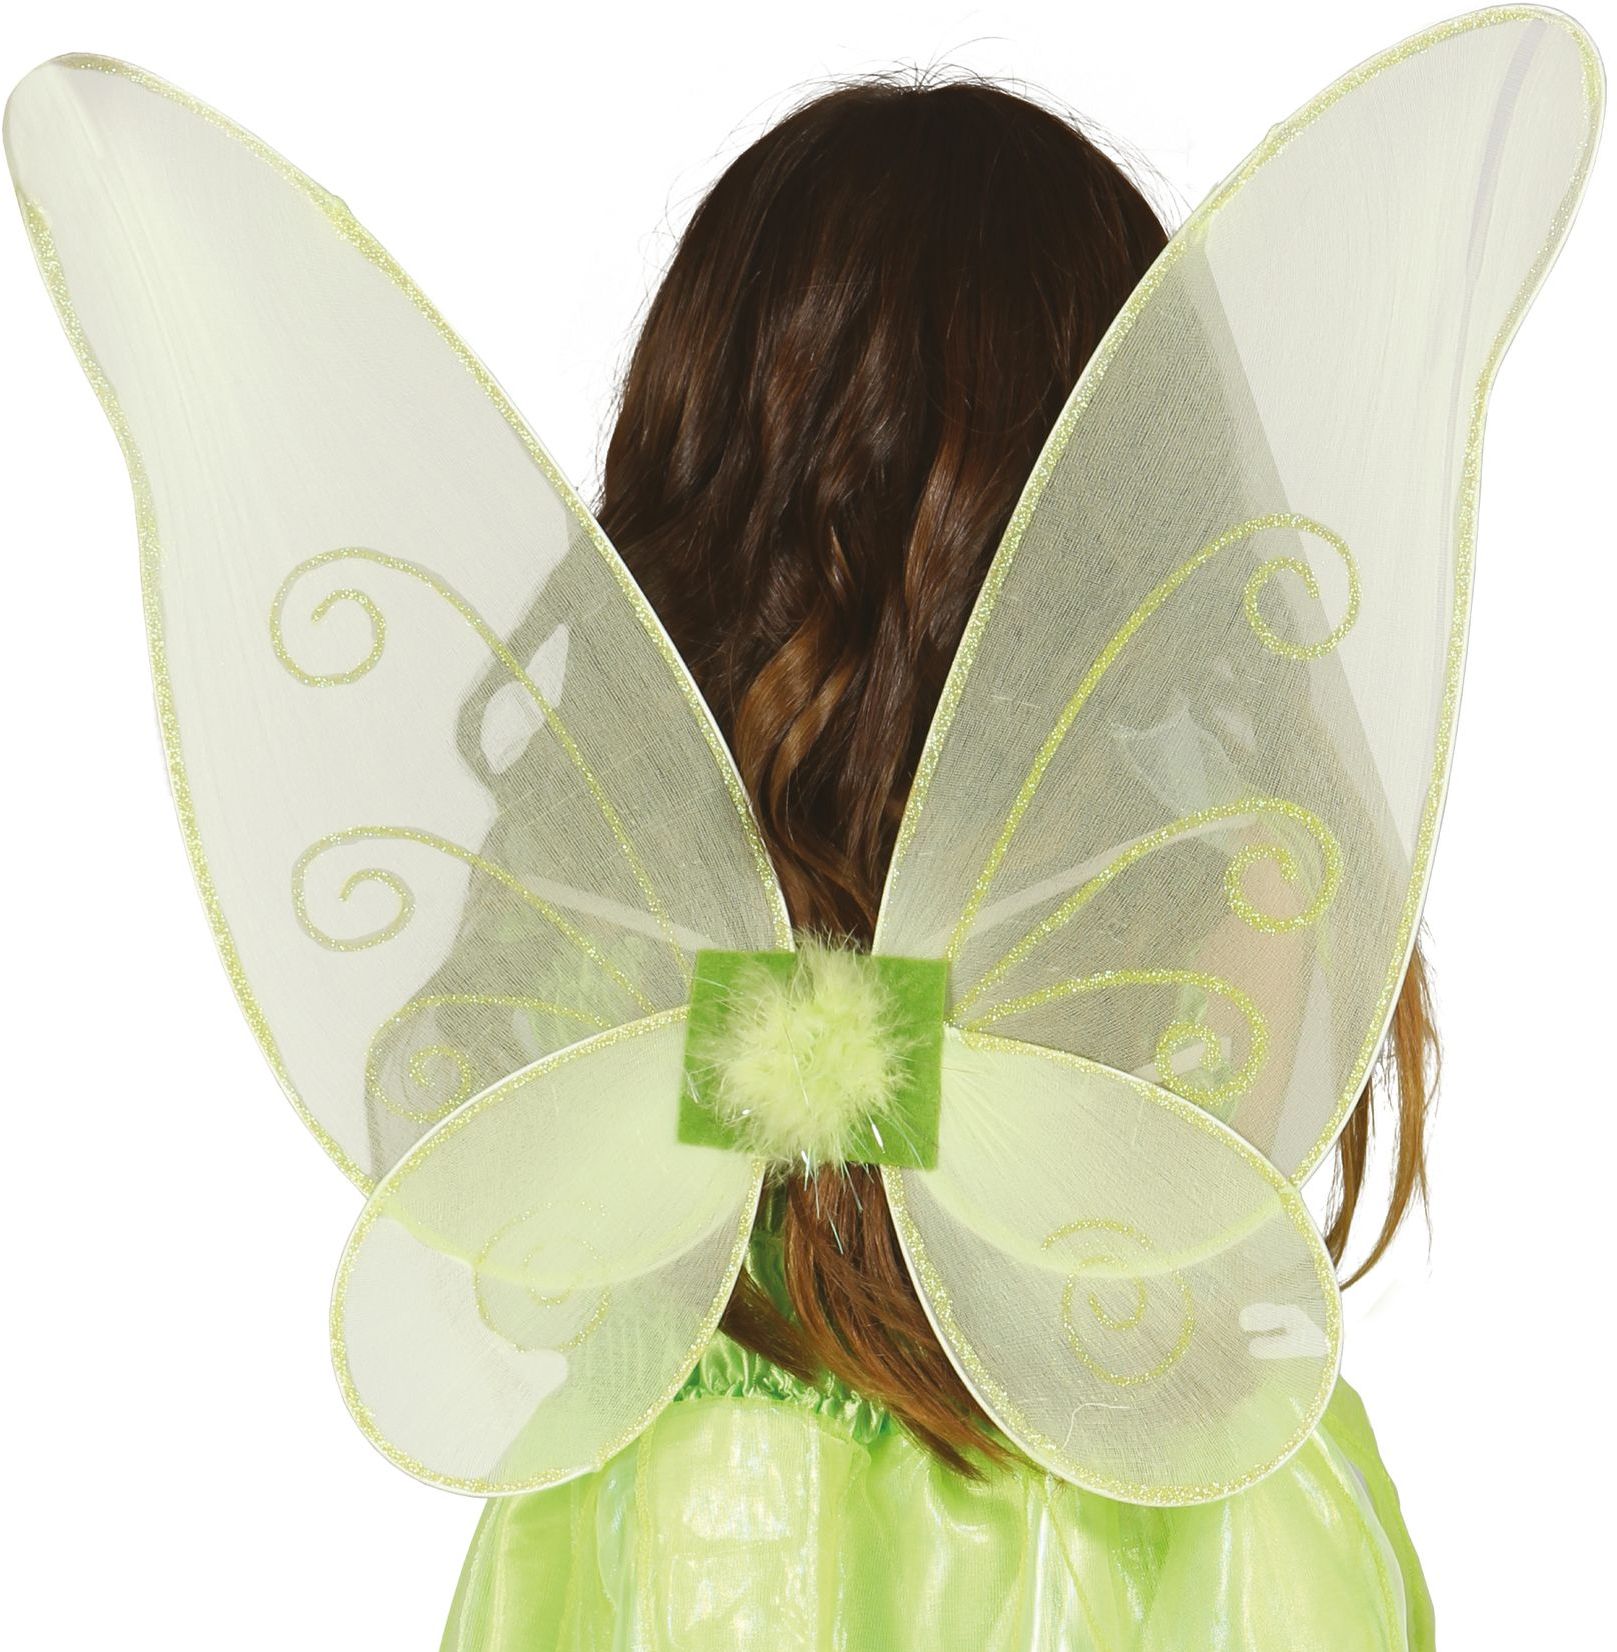 Groene glitter Tinkerbell vleugels